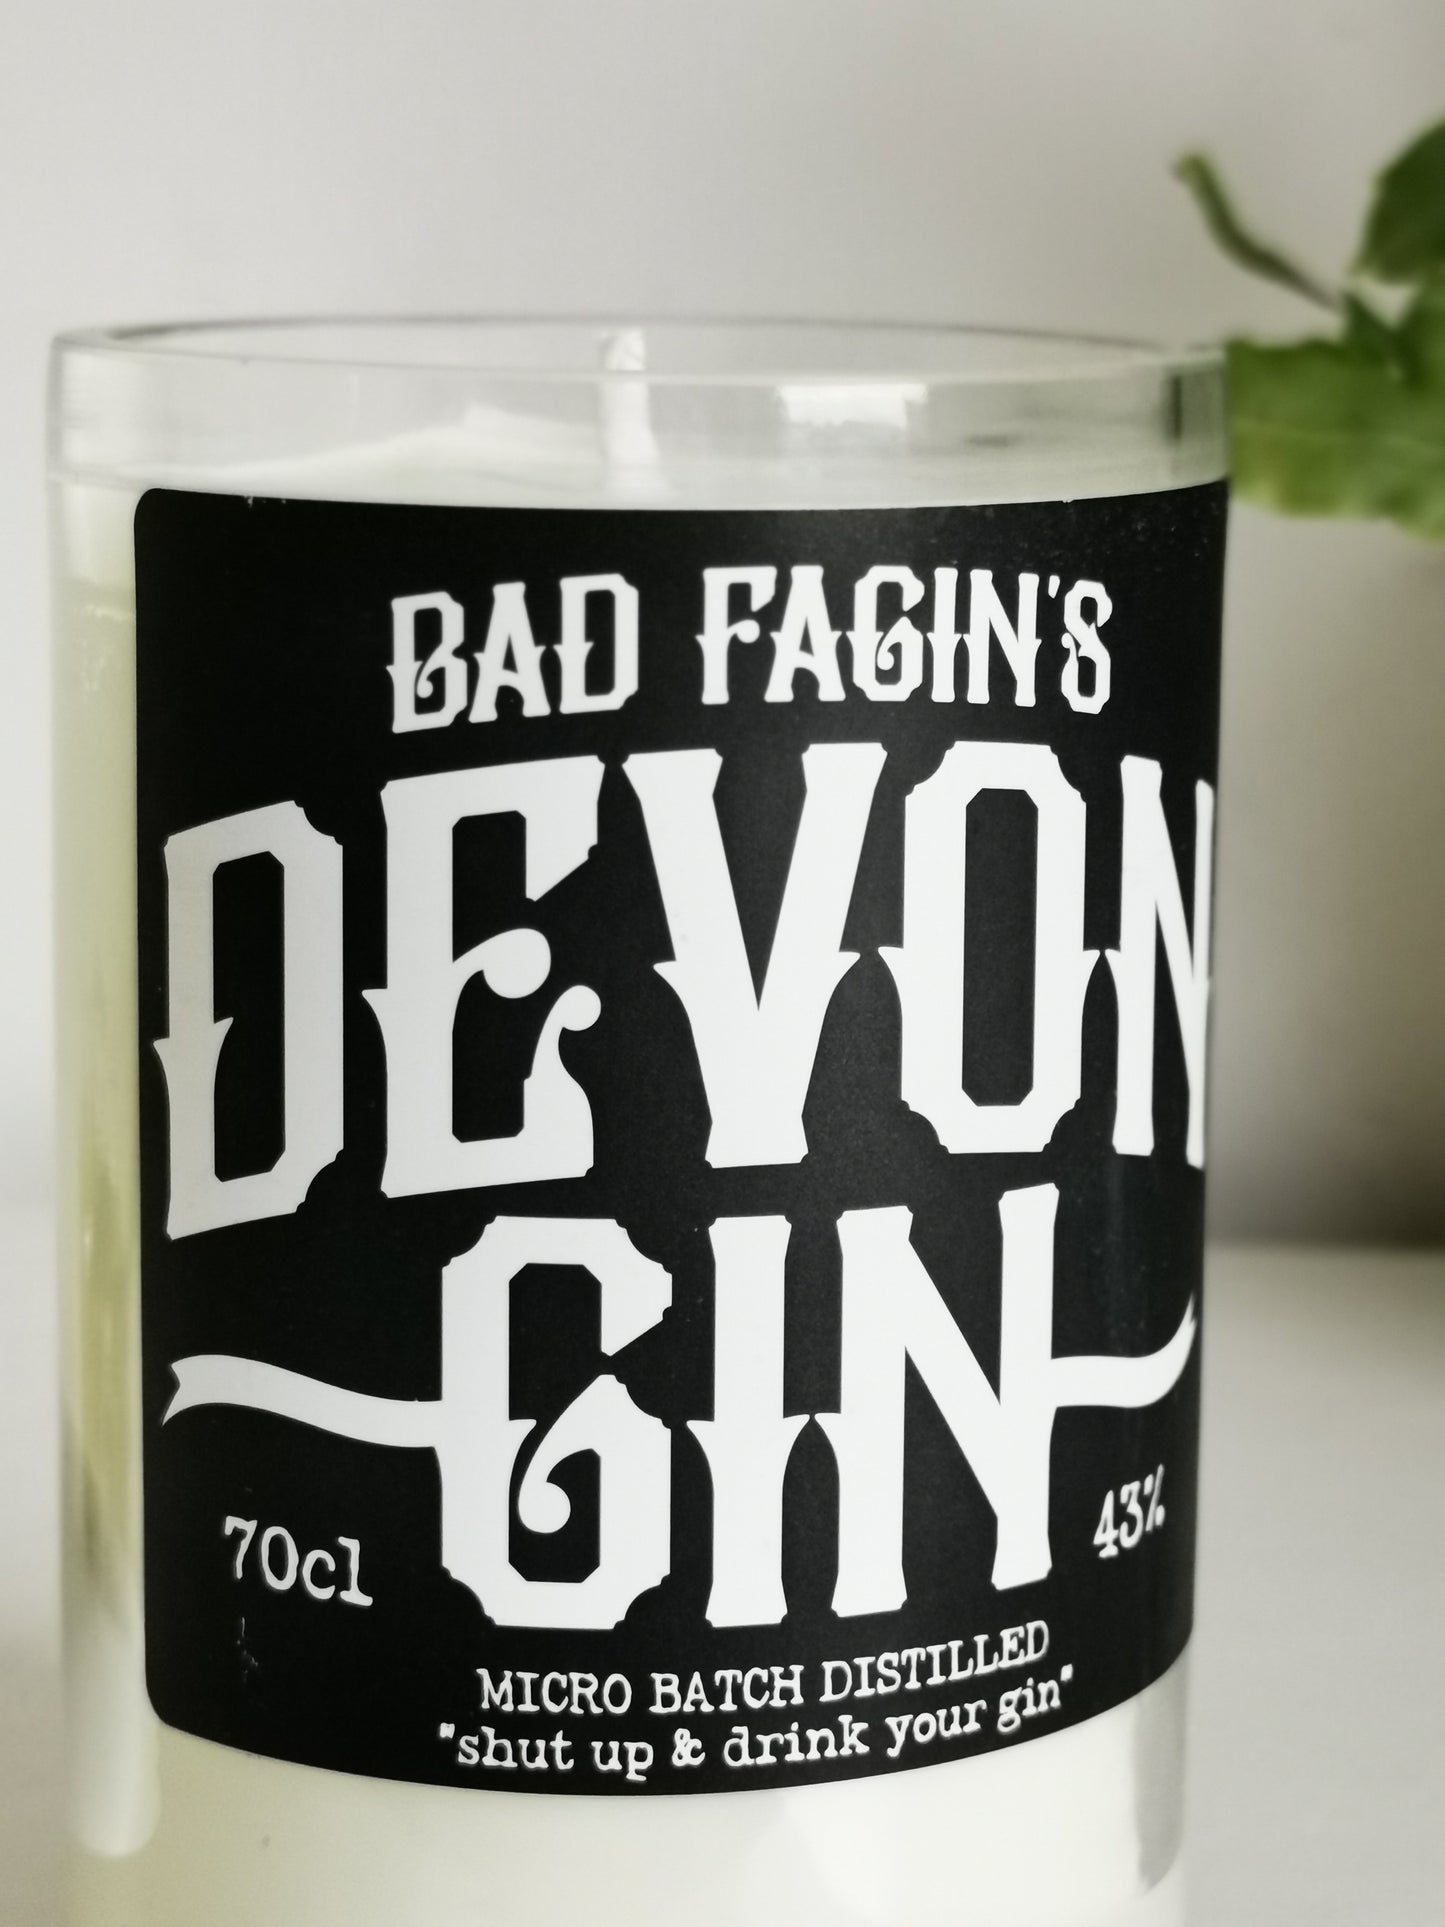 Bad Fagins Devon Gin Bottle Candle